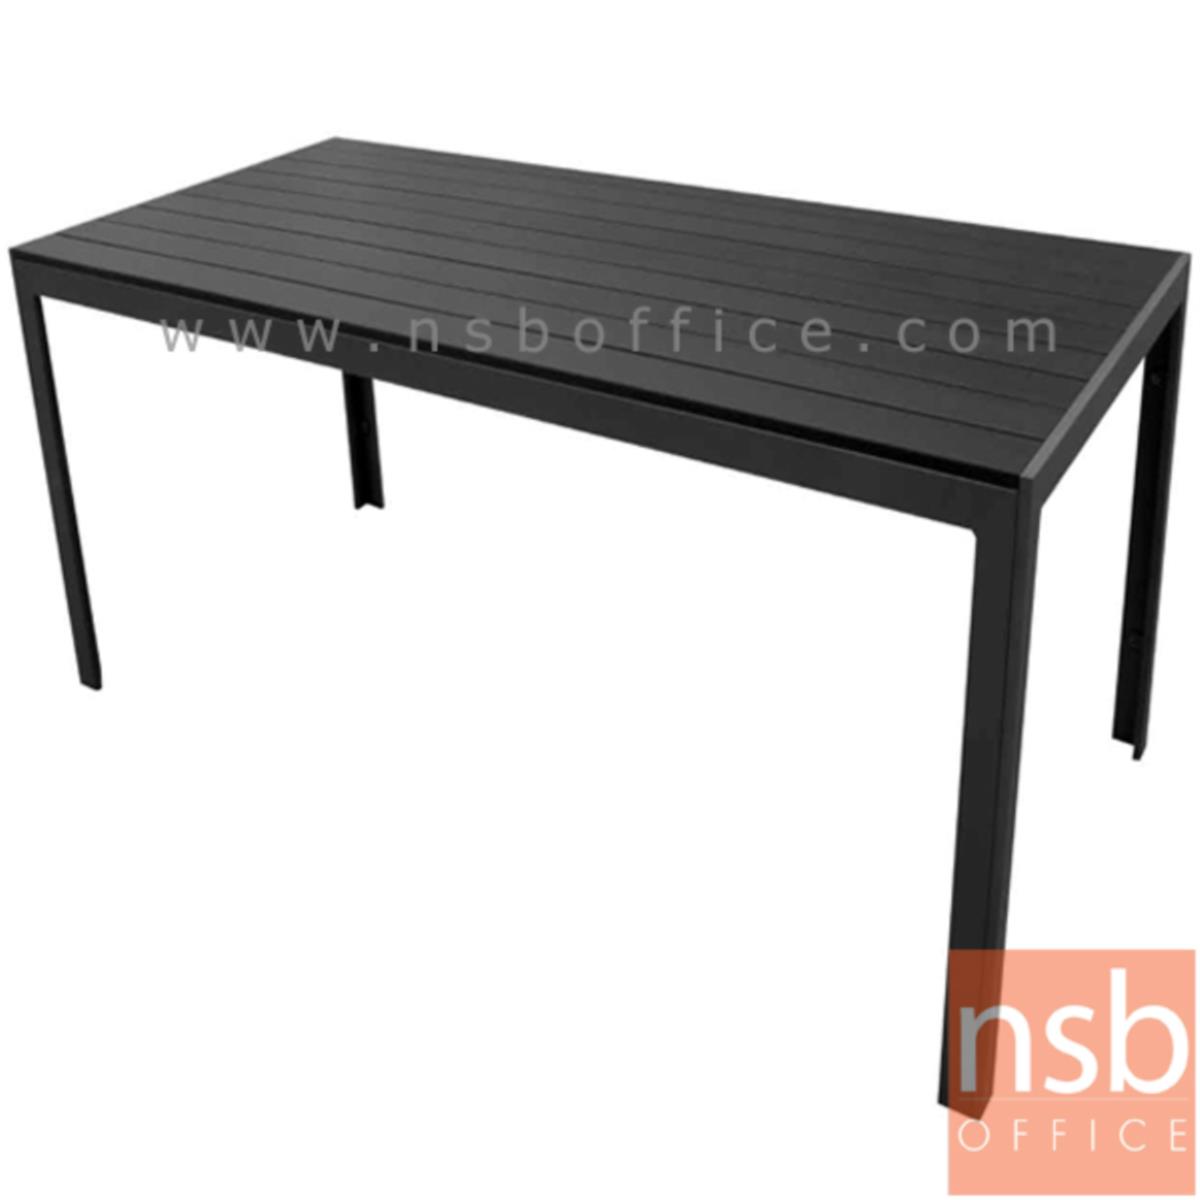 โต๊ะเฟรมอลูมิเนียมหน้าไม้โพลี รุ่น Muffin (มัฟฟิน) ขนาด 160W cm.  โครงขาสีดำเกร็ดเงิน 